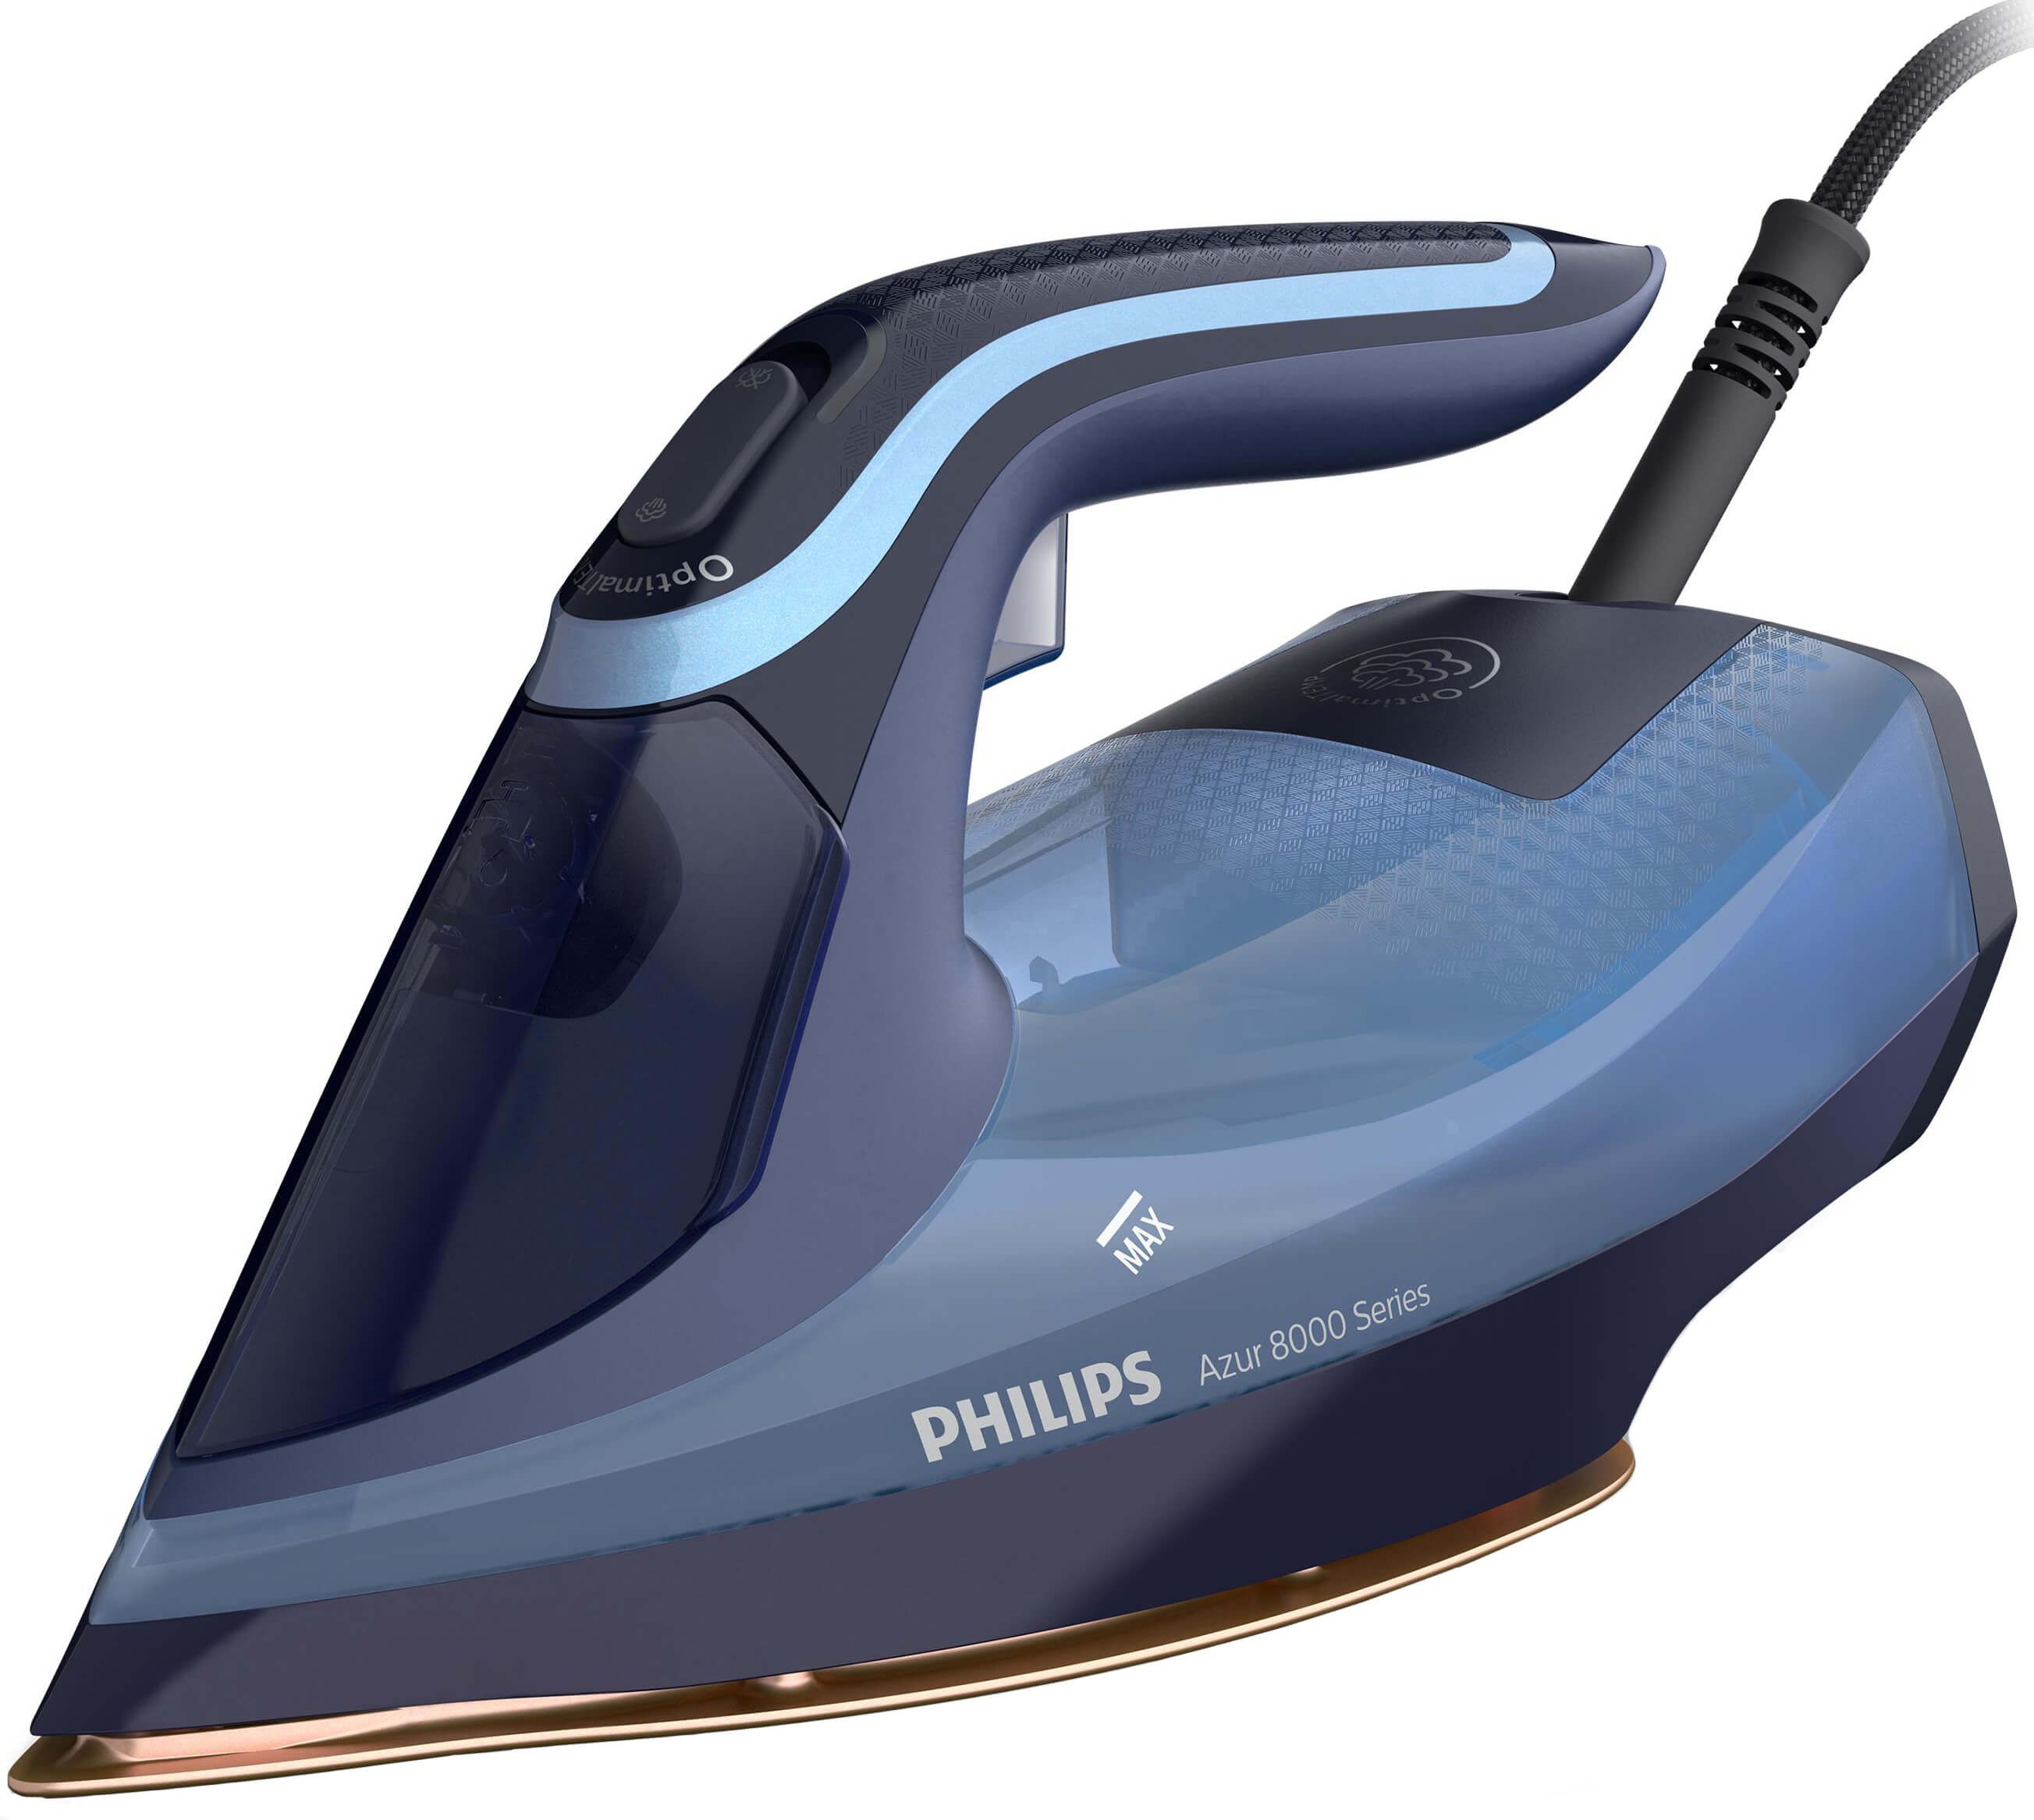 Утюг philips 8000 series. Philips Azur 8000 Series. Утюг Philips dst8020/20. Утюг Филипс Azur. Утюг Филипс Азур.